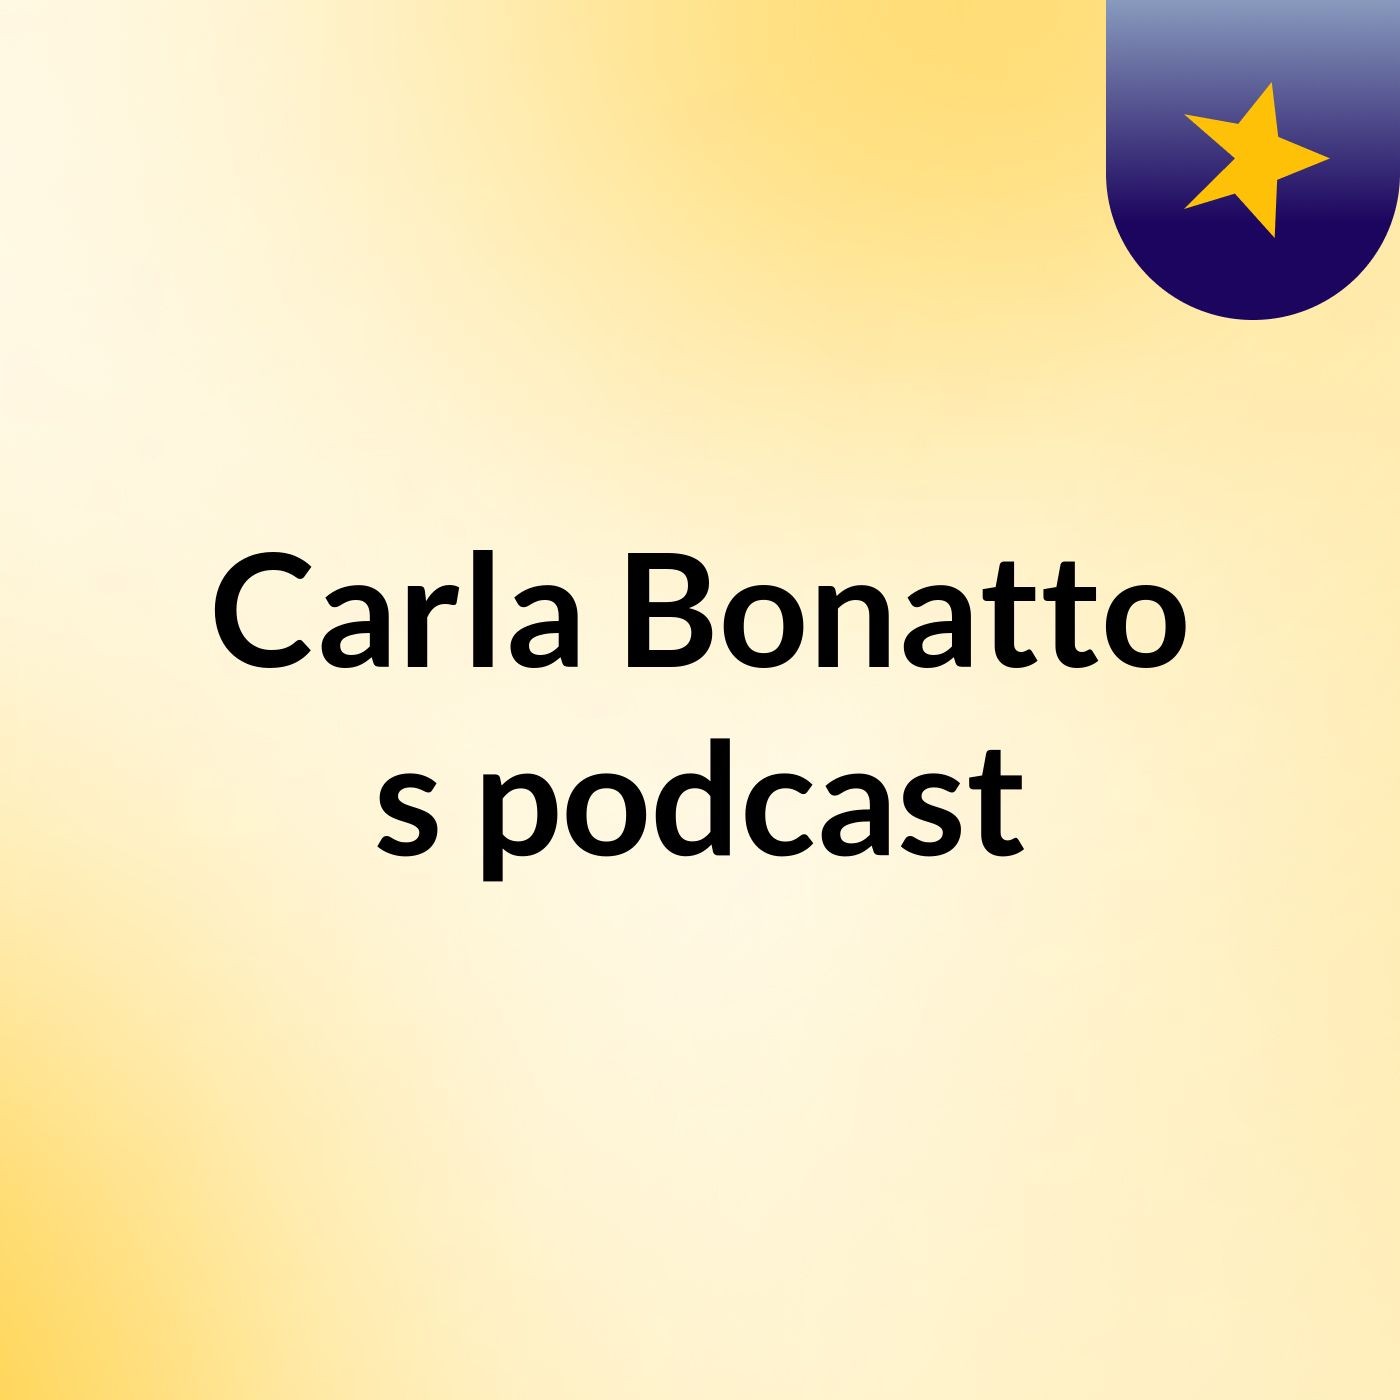 Carla Bonatto's podcast